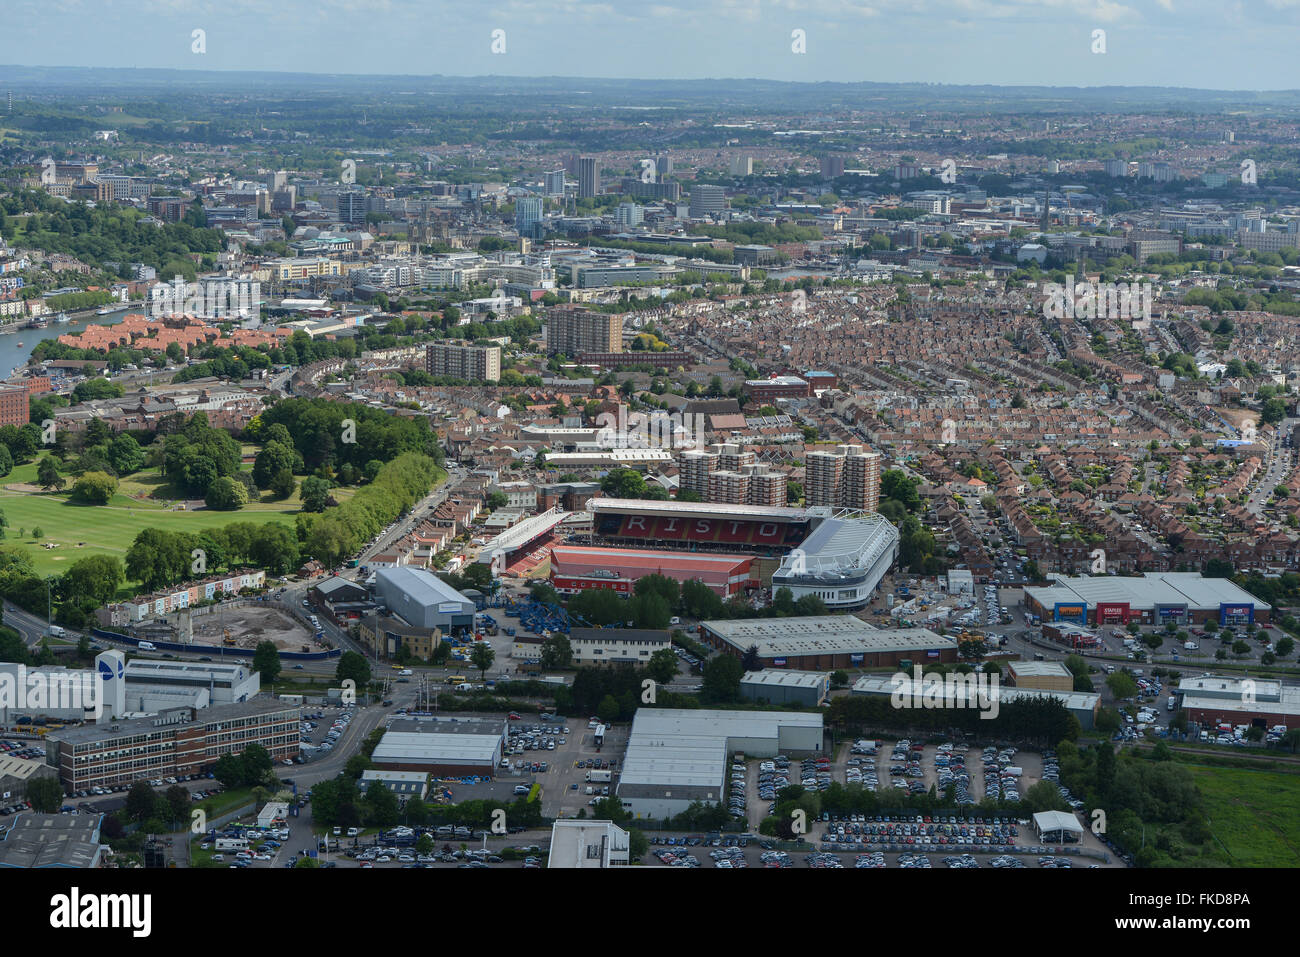 Una vista aérea de Bristol mirando hacia Ashton Gate con el centro de la ciudad, visible en la distancia Foto de stock